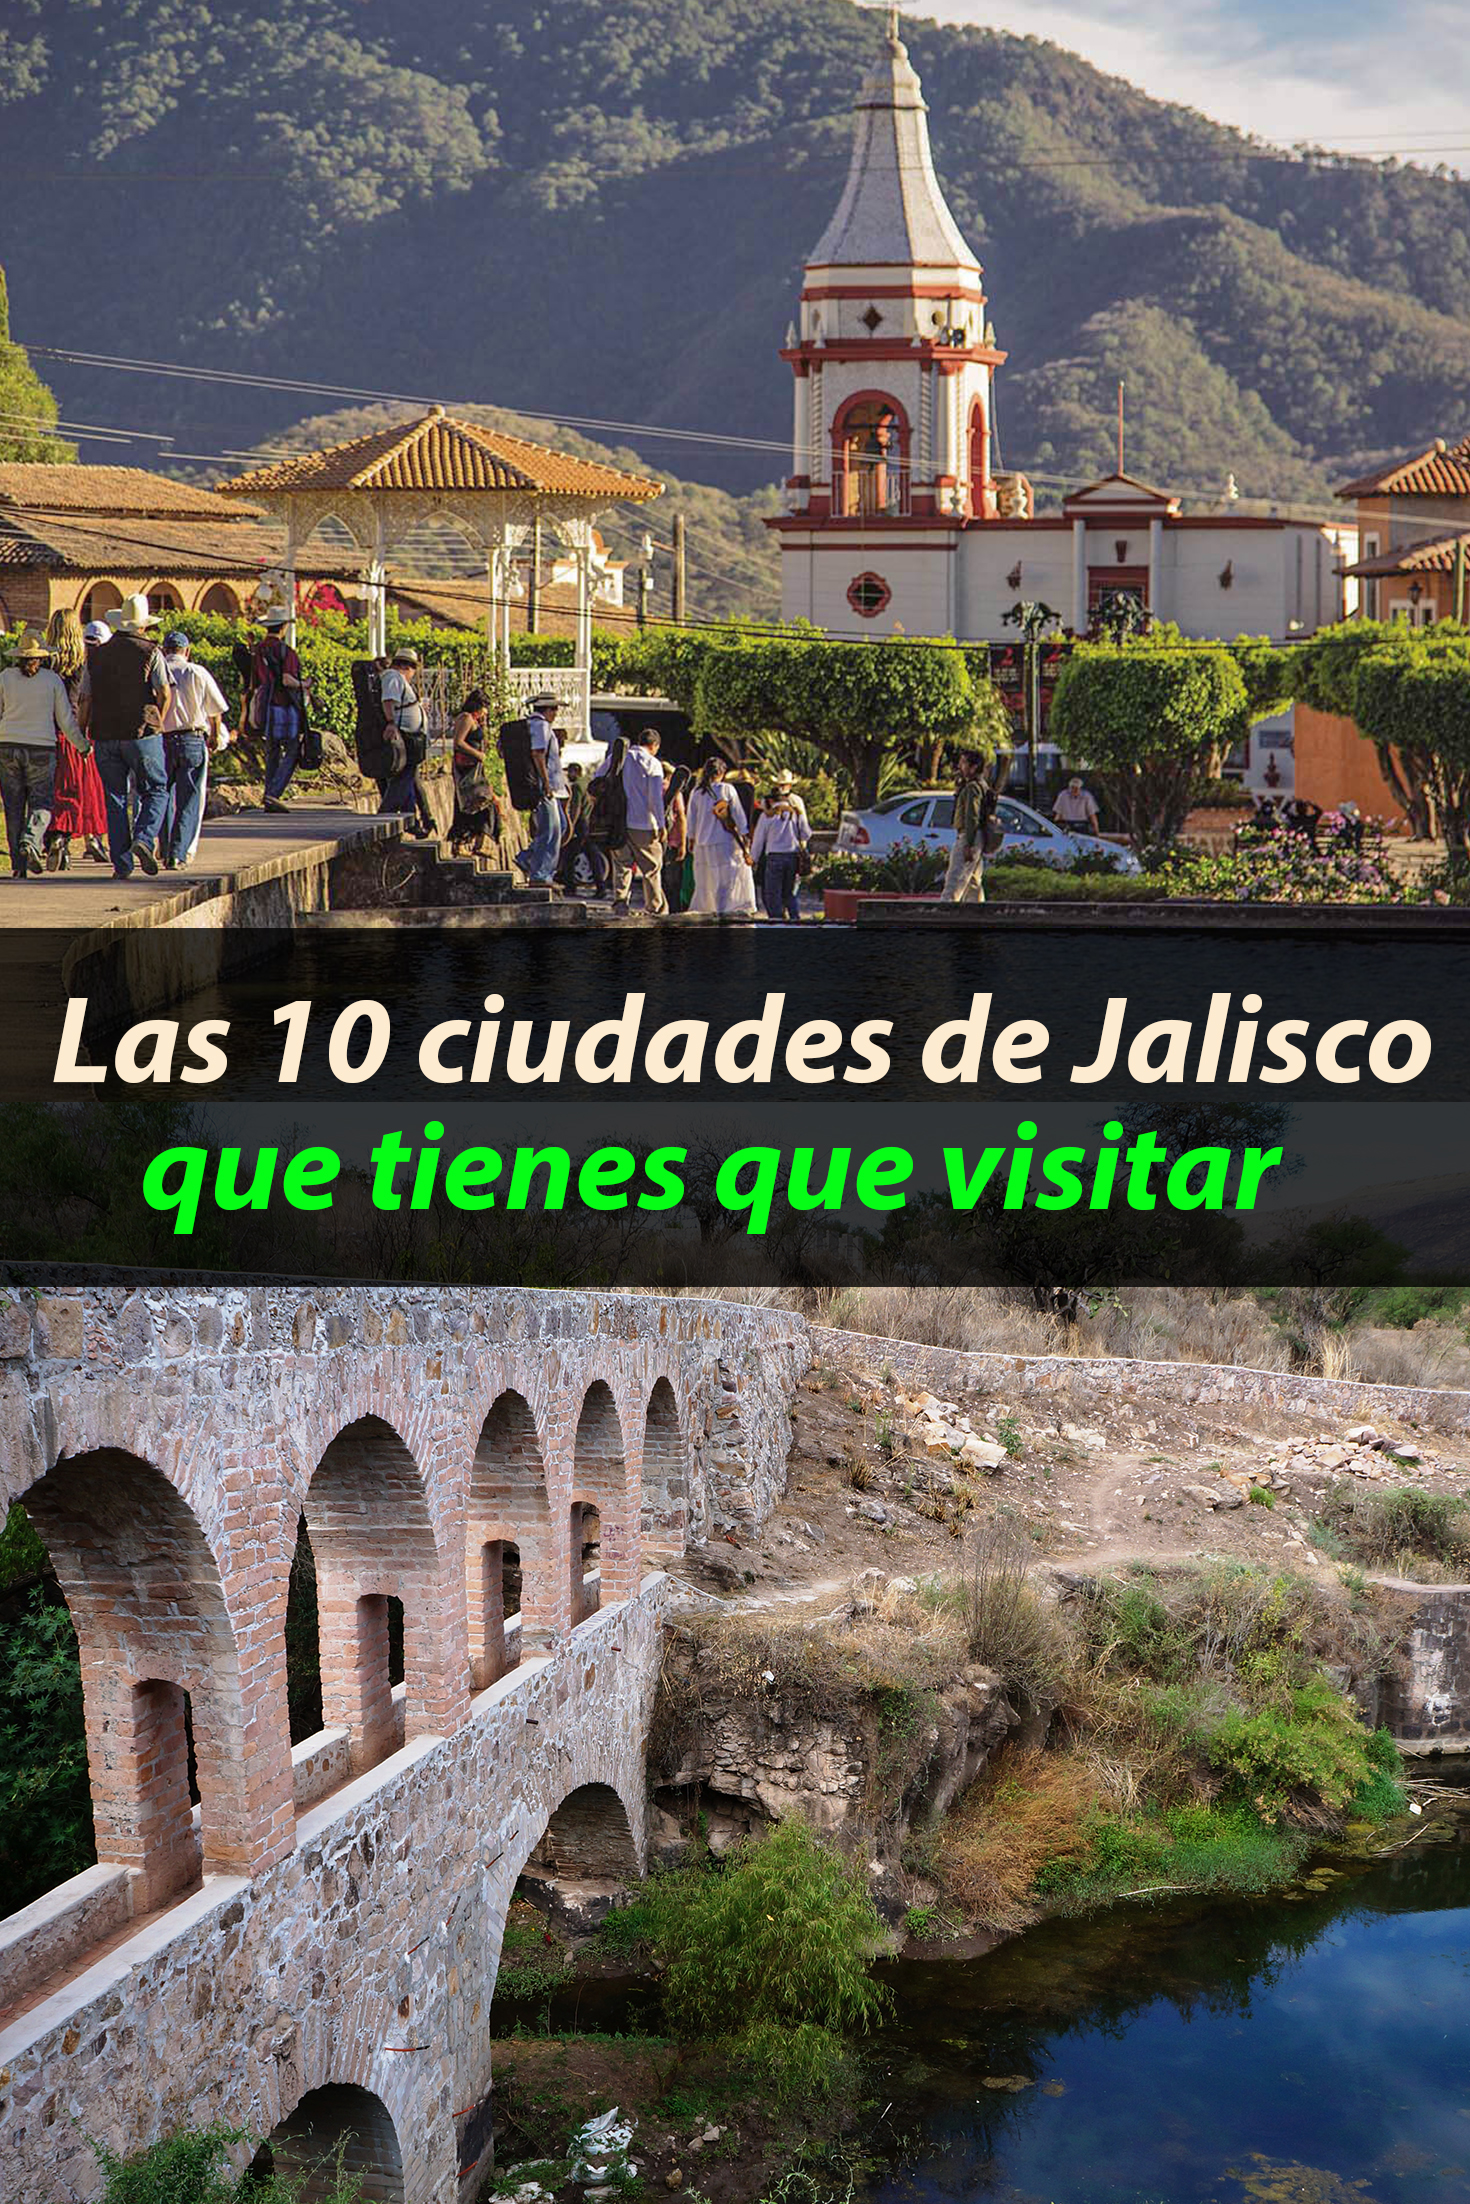 Las 10 ciudades de Jalisco que tienes que visitar